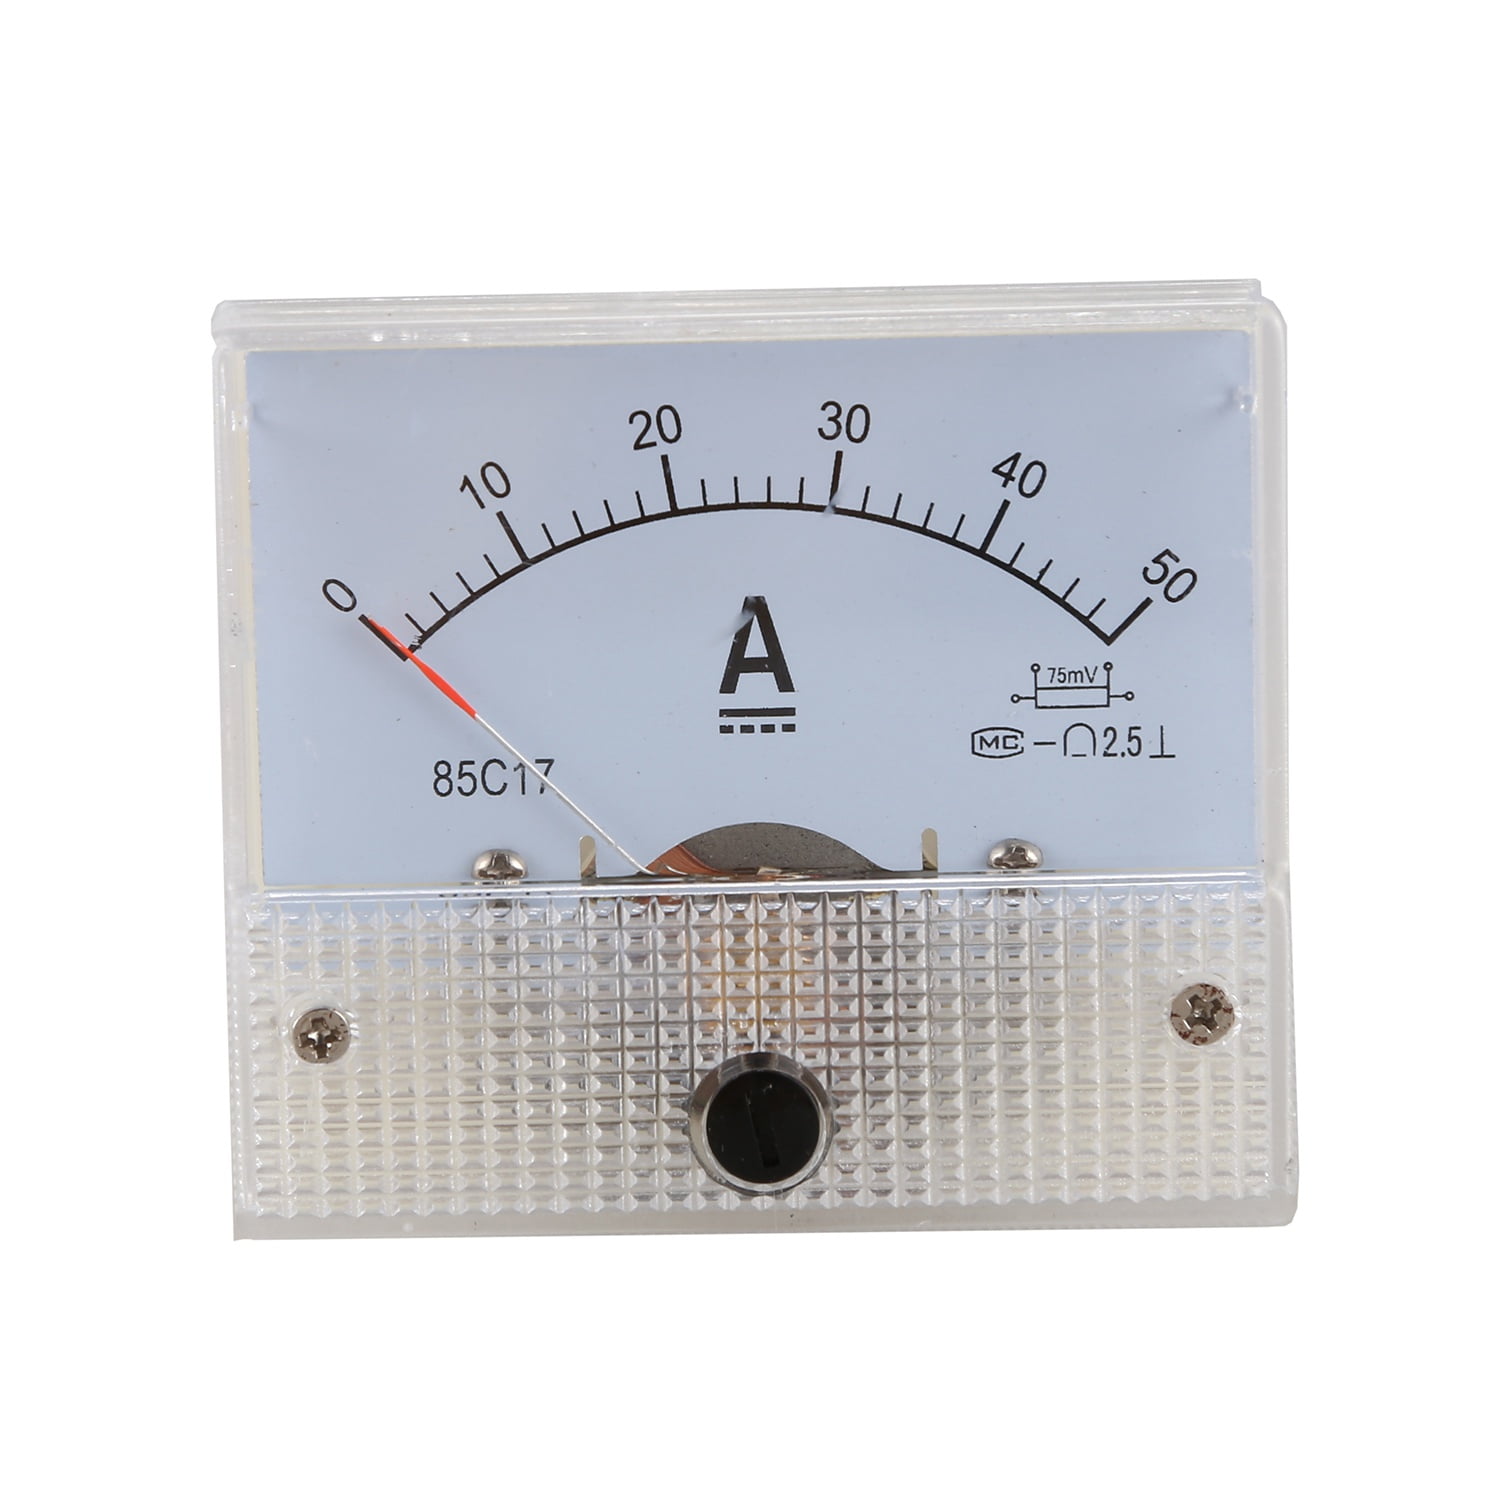 DC 0-50A Analog Amp Meter Ammeter Current Panel 50A 75mV Shunt Resistor 